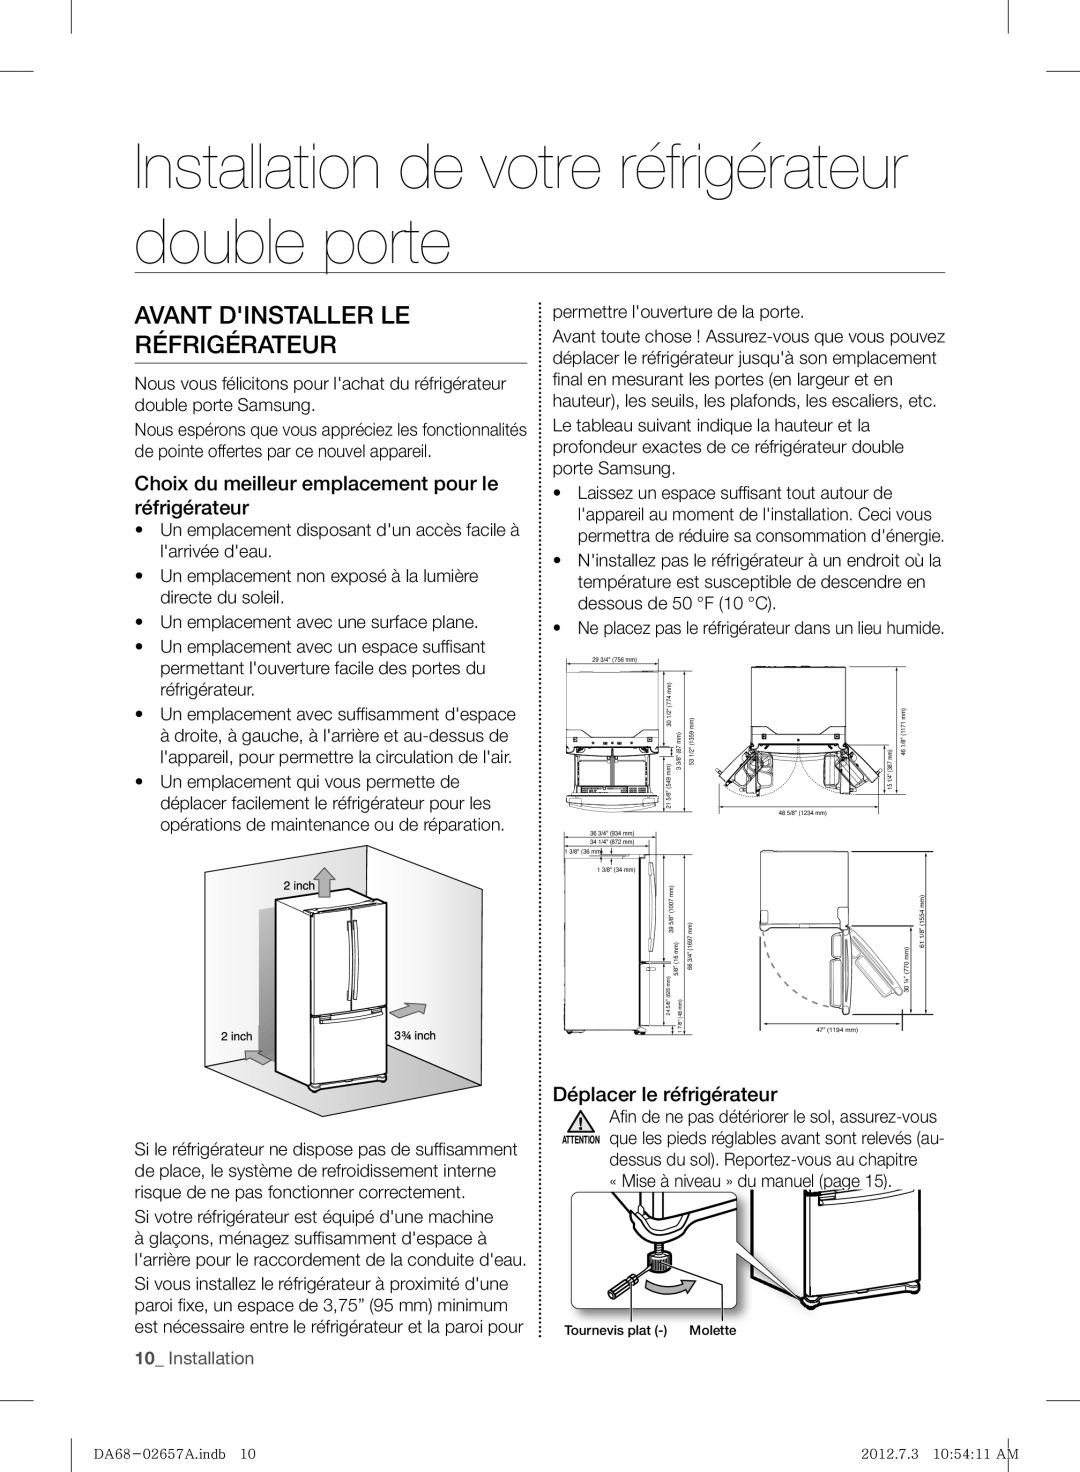 Samsung RF221NCTABC user manual Installation de votre réfrigérateur double porte, Avant Dinstaller Le Réfrigérateur 